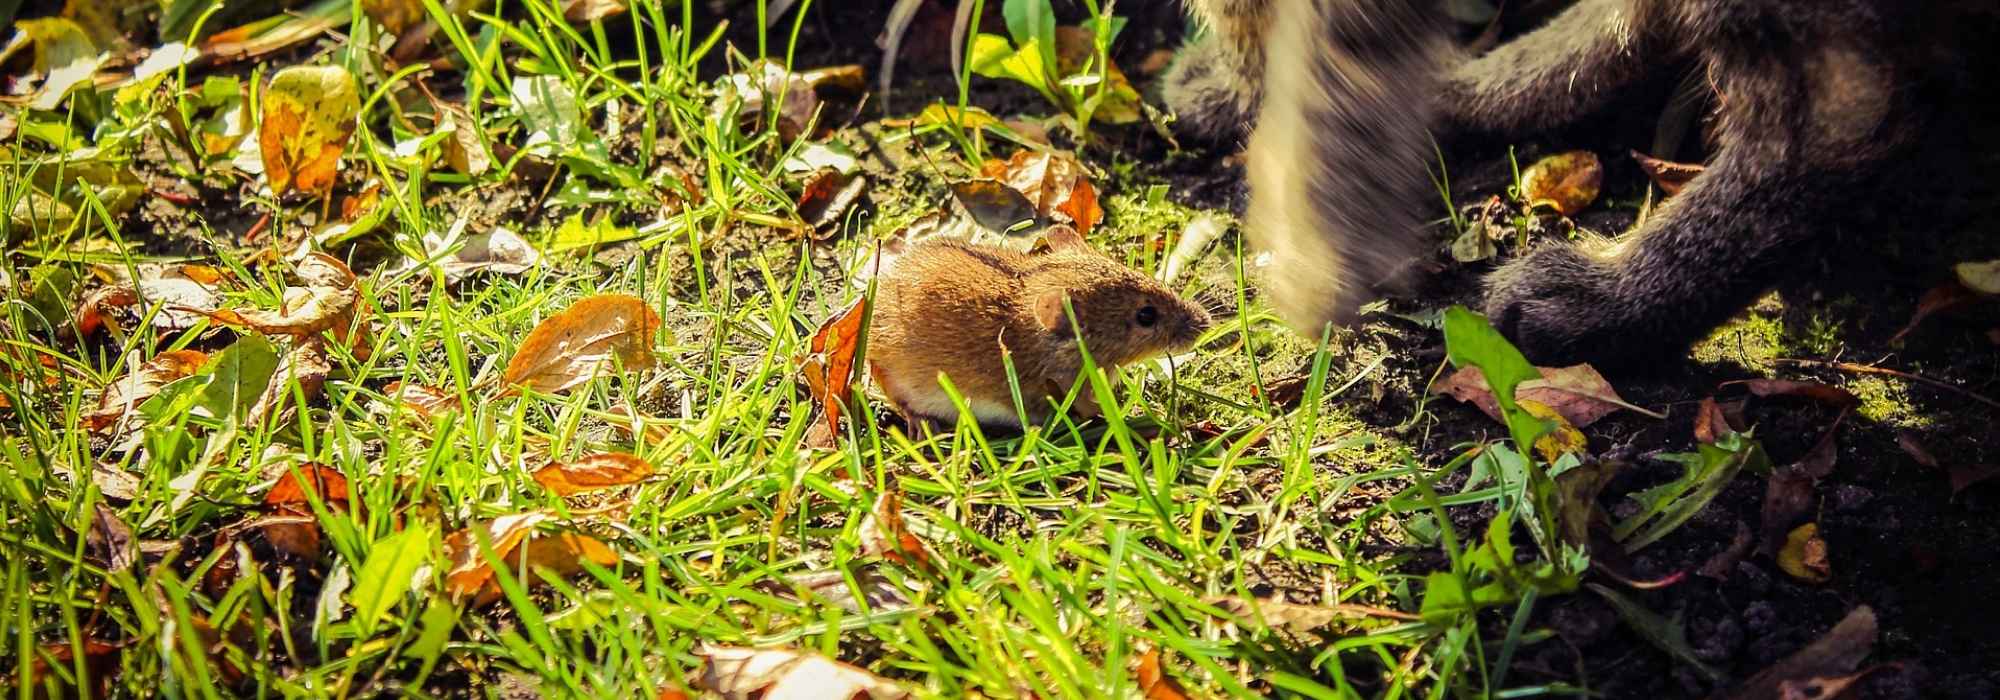 Les rats profitent des composts pour mieux parasiter l'homme - Le Soir